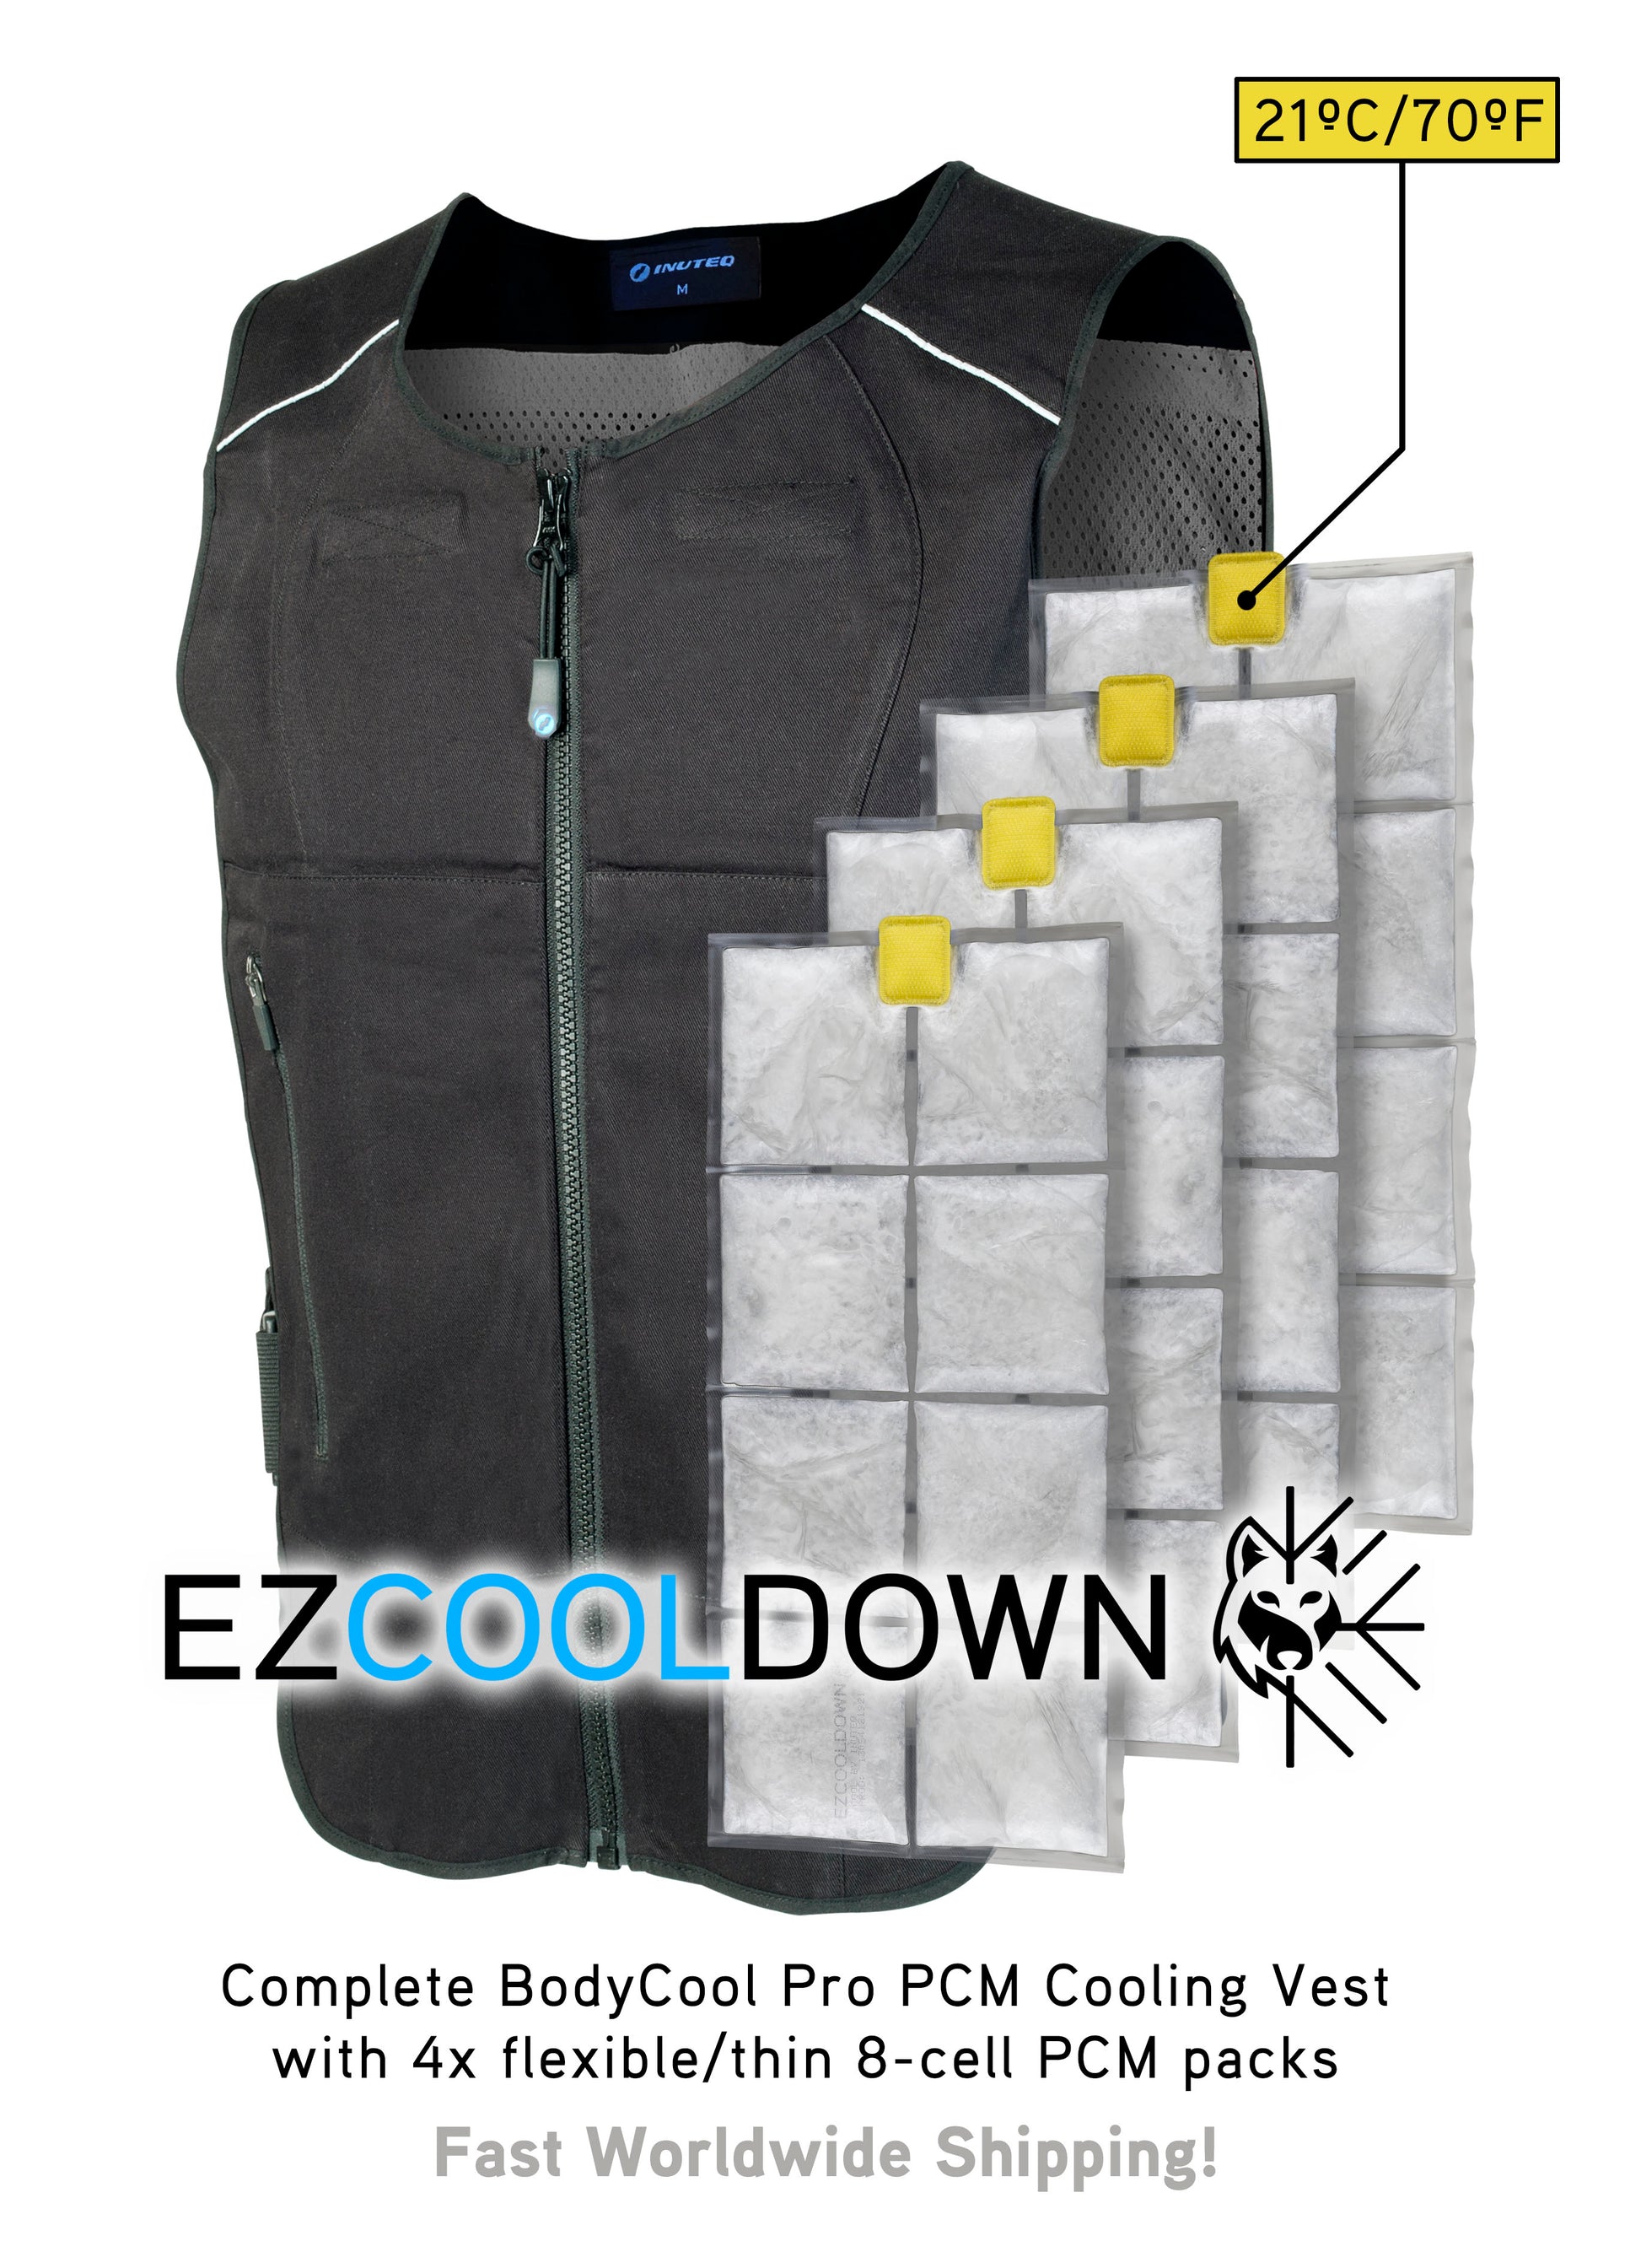 Standard Cooling Vest, Cold Packs